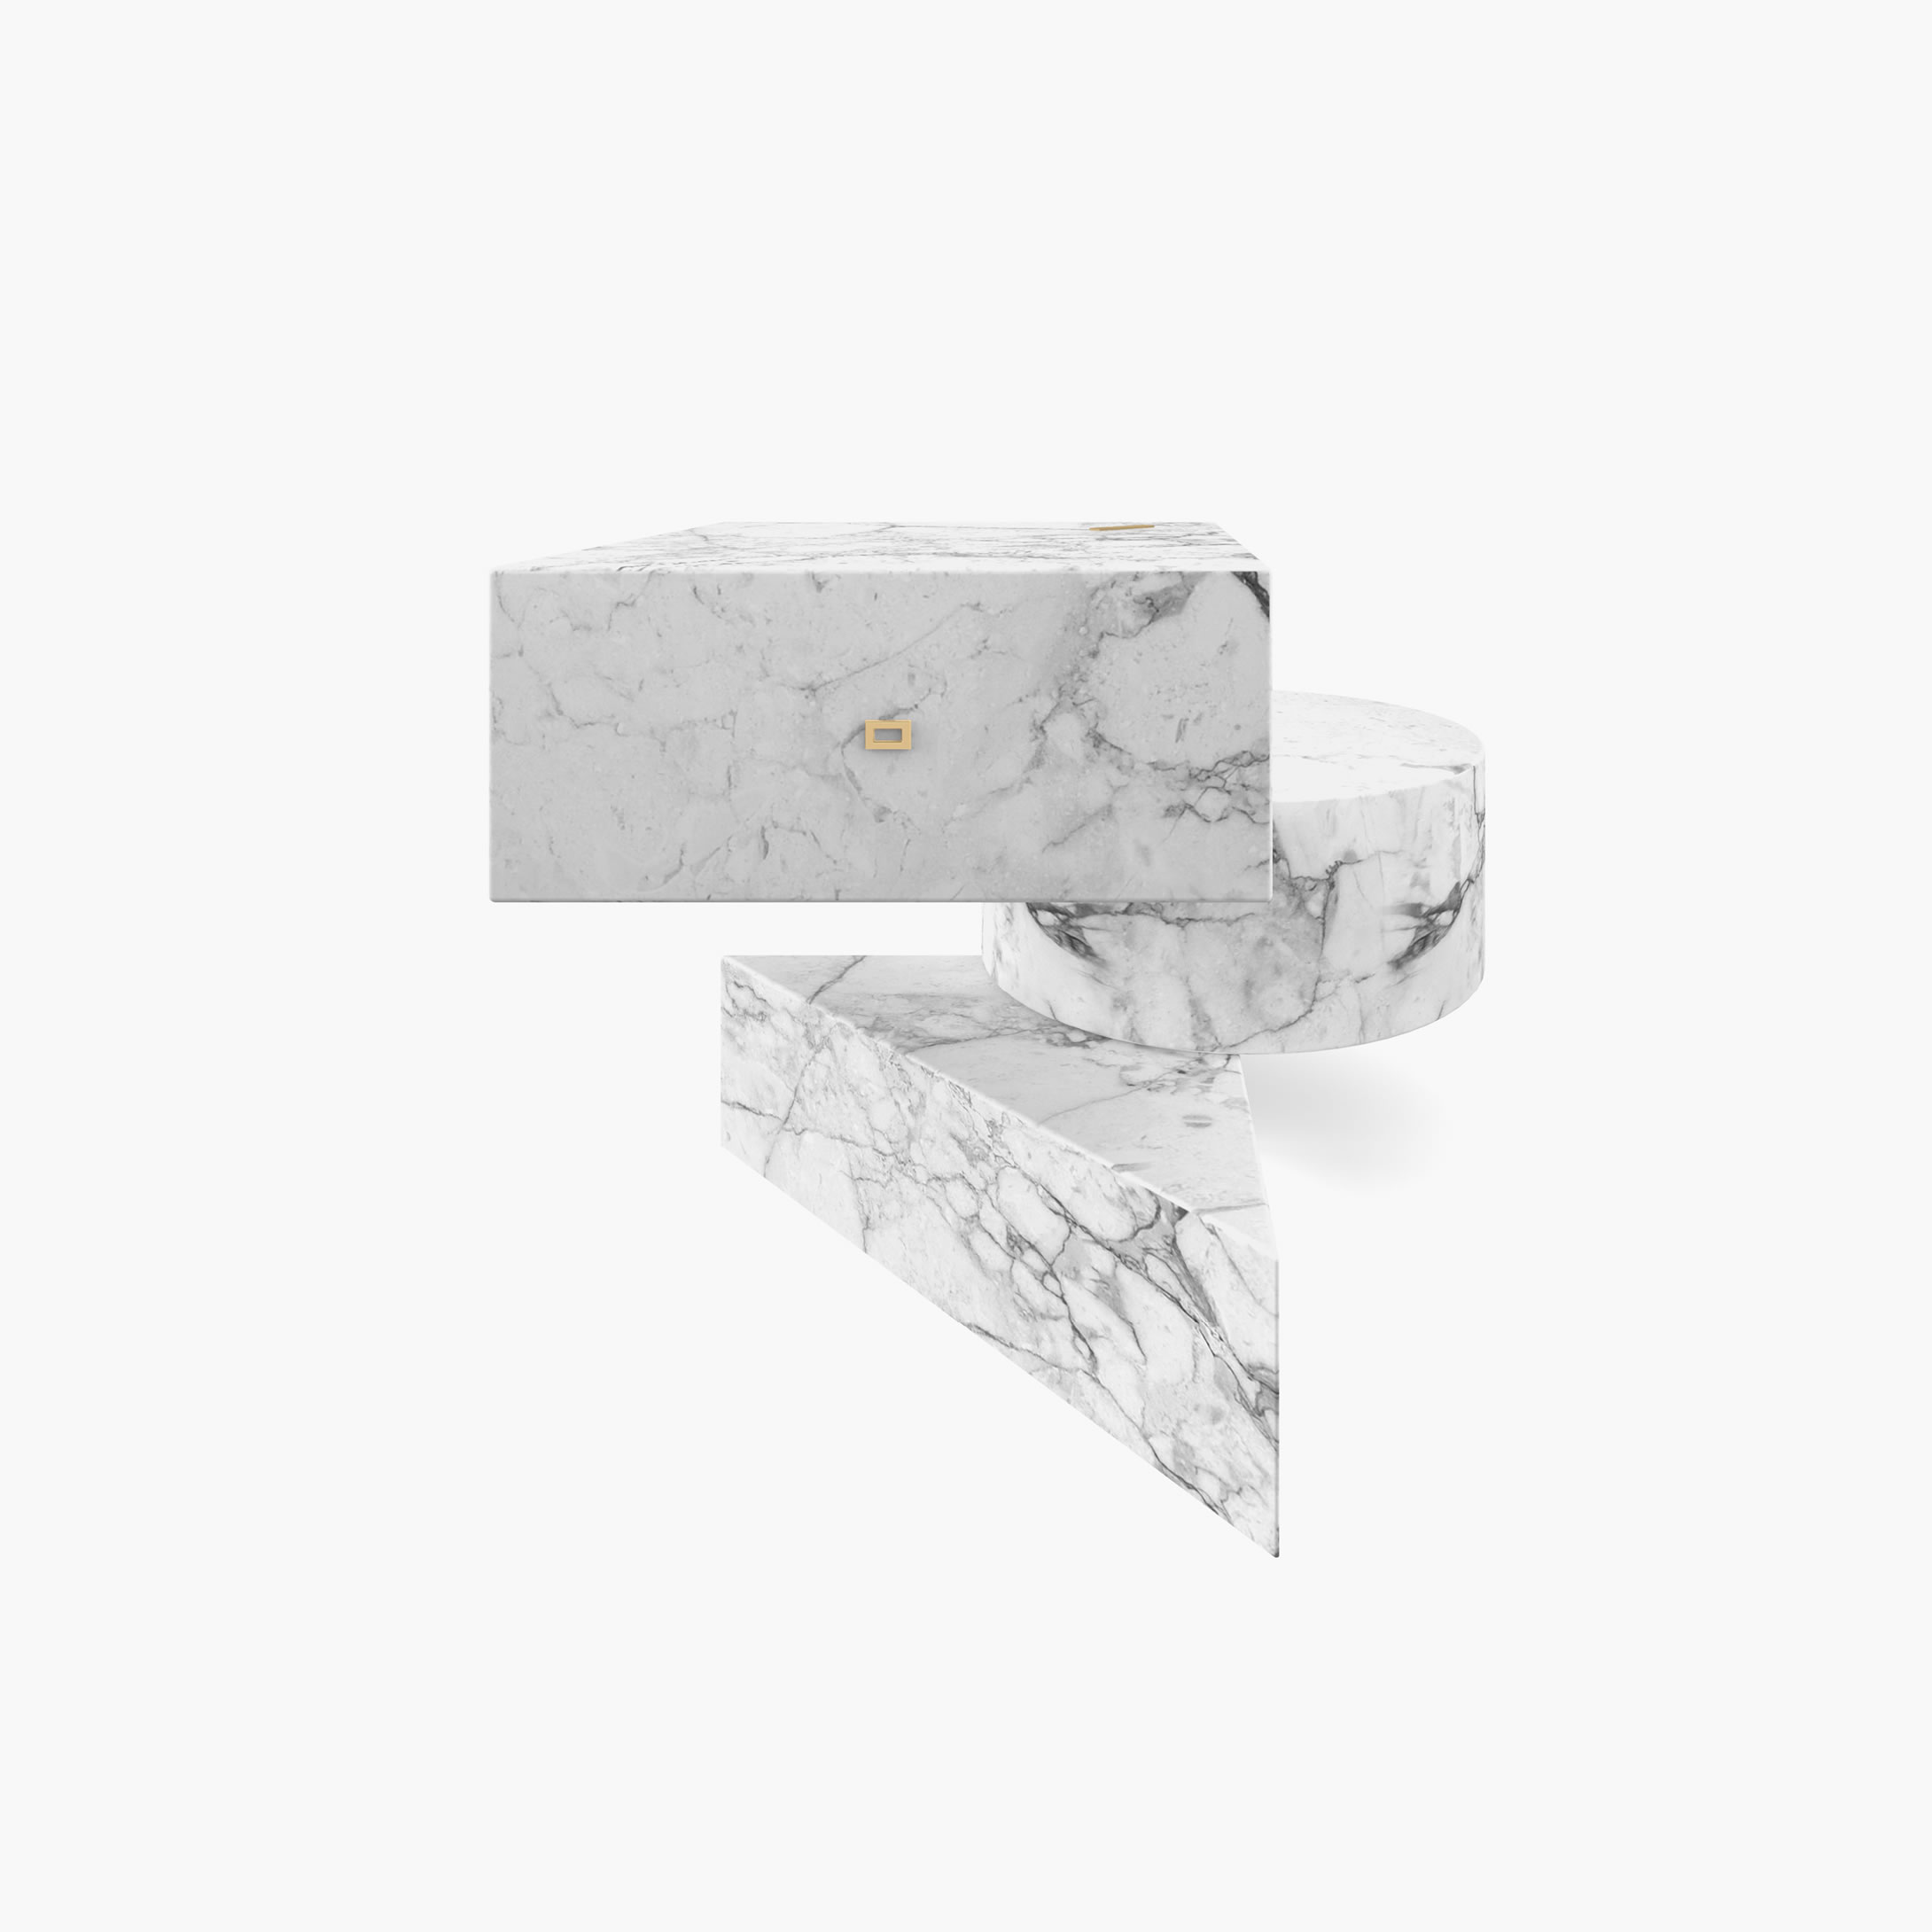 Beistelltisch Zylinder Quader Prisma Weiss Arabescato Marmor zeitlos Wohnzimmer Kunstwerk Beistelltische FS 130 1 FELIX SCHWAKE